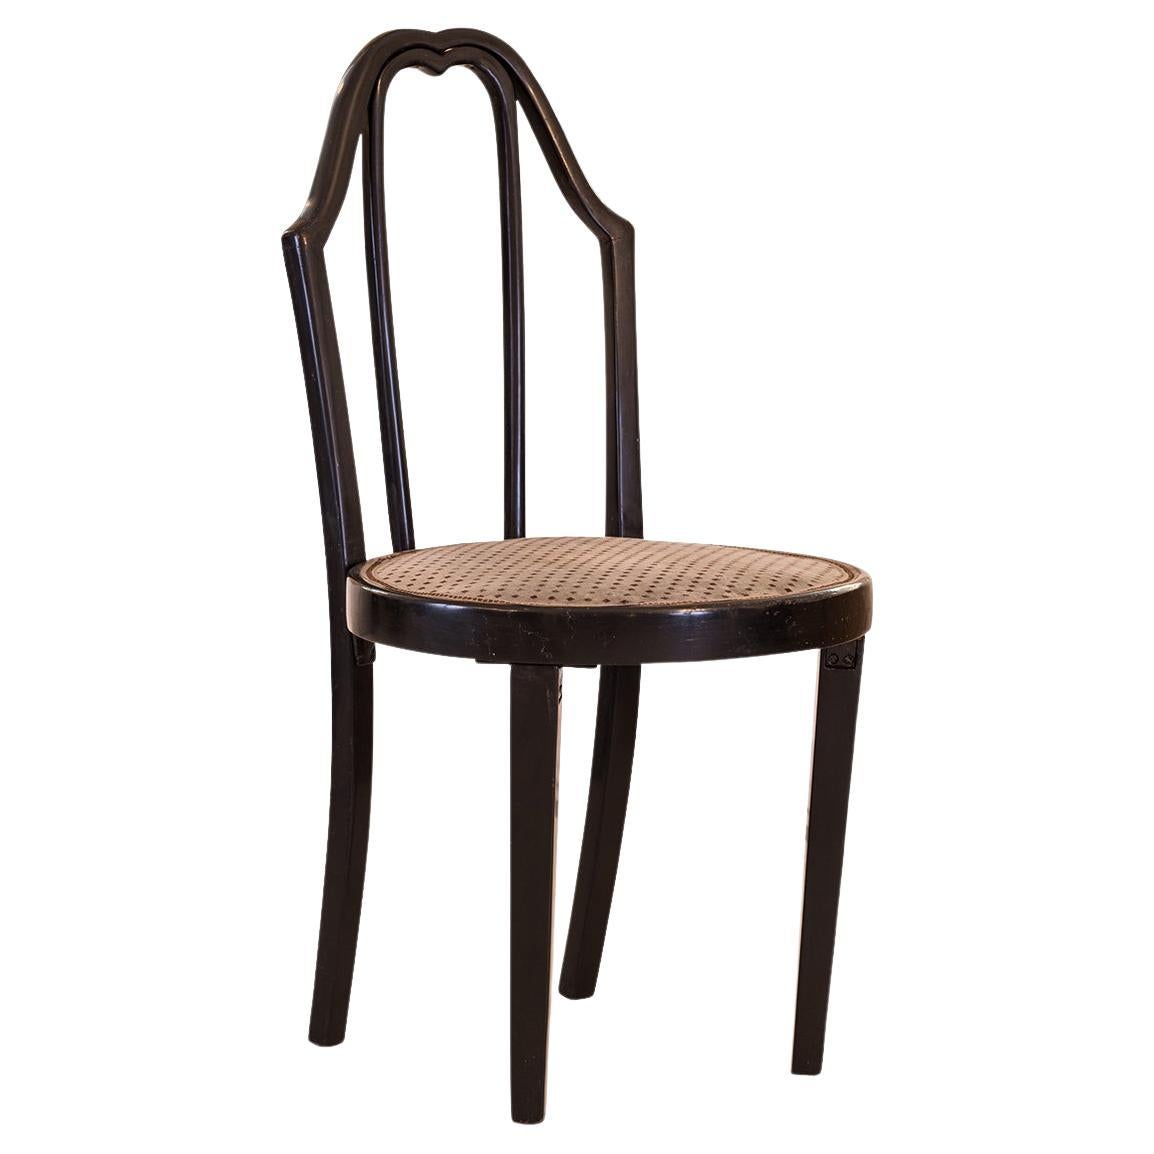 Äußergewöhnlich seltener Stuhl aus dem Grabenkaffehaus, Wien 1, Graben, Original